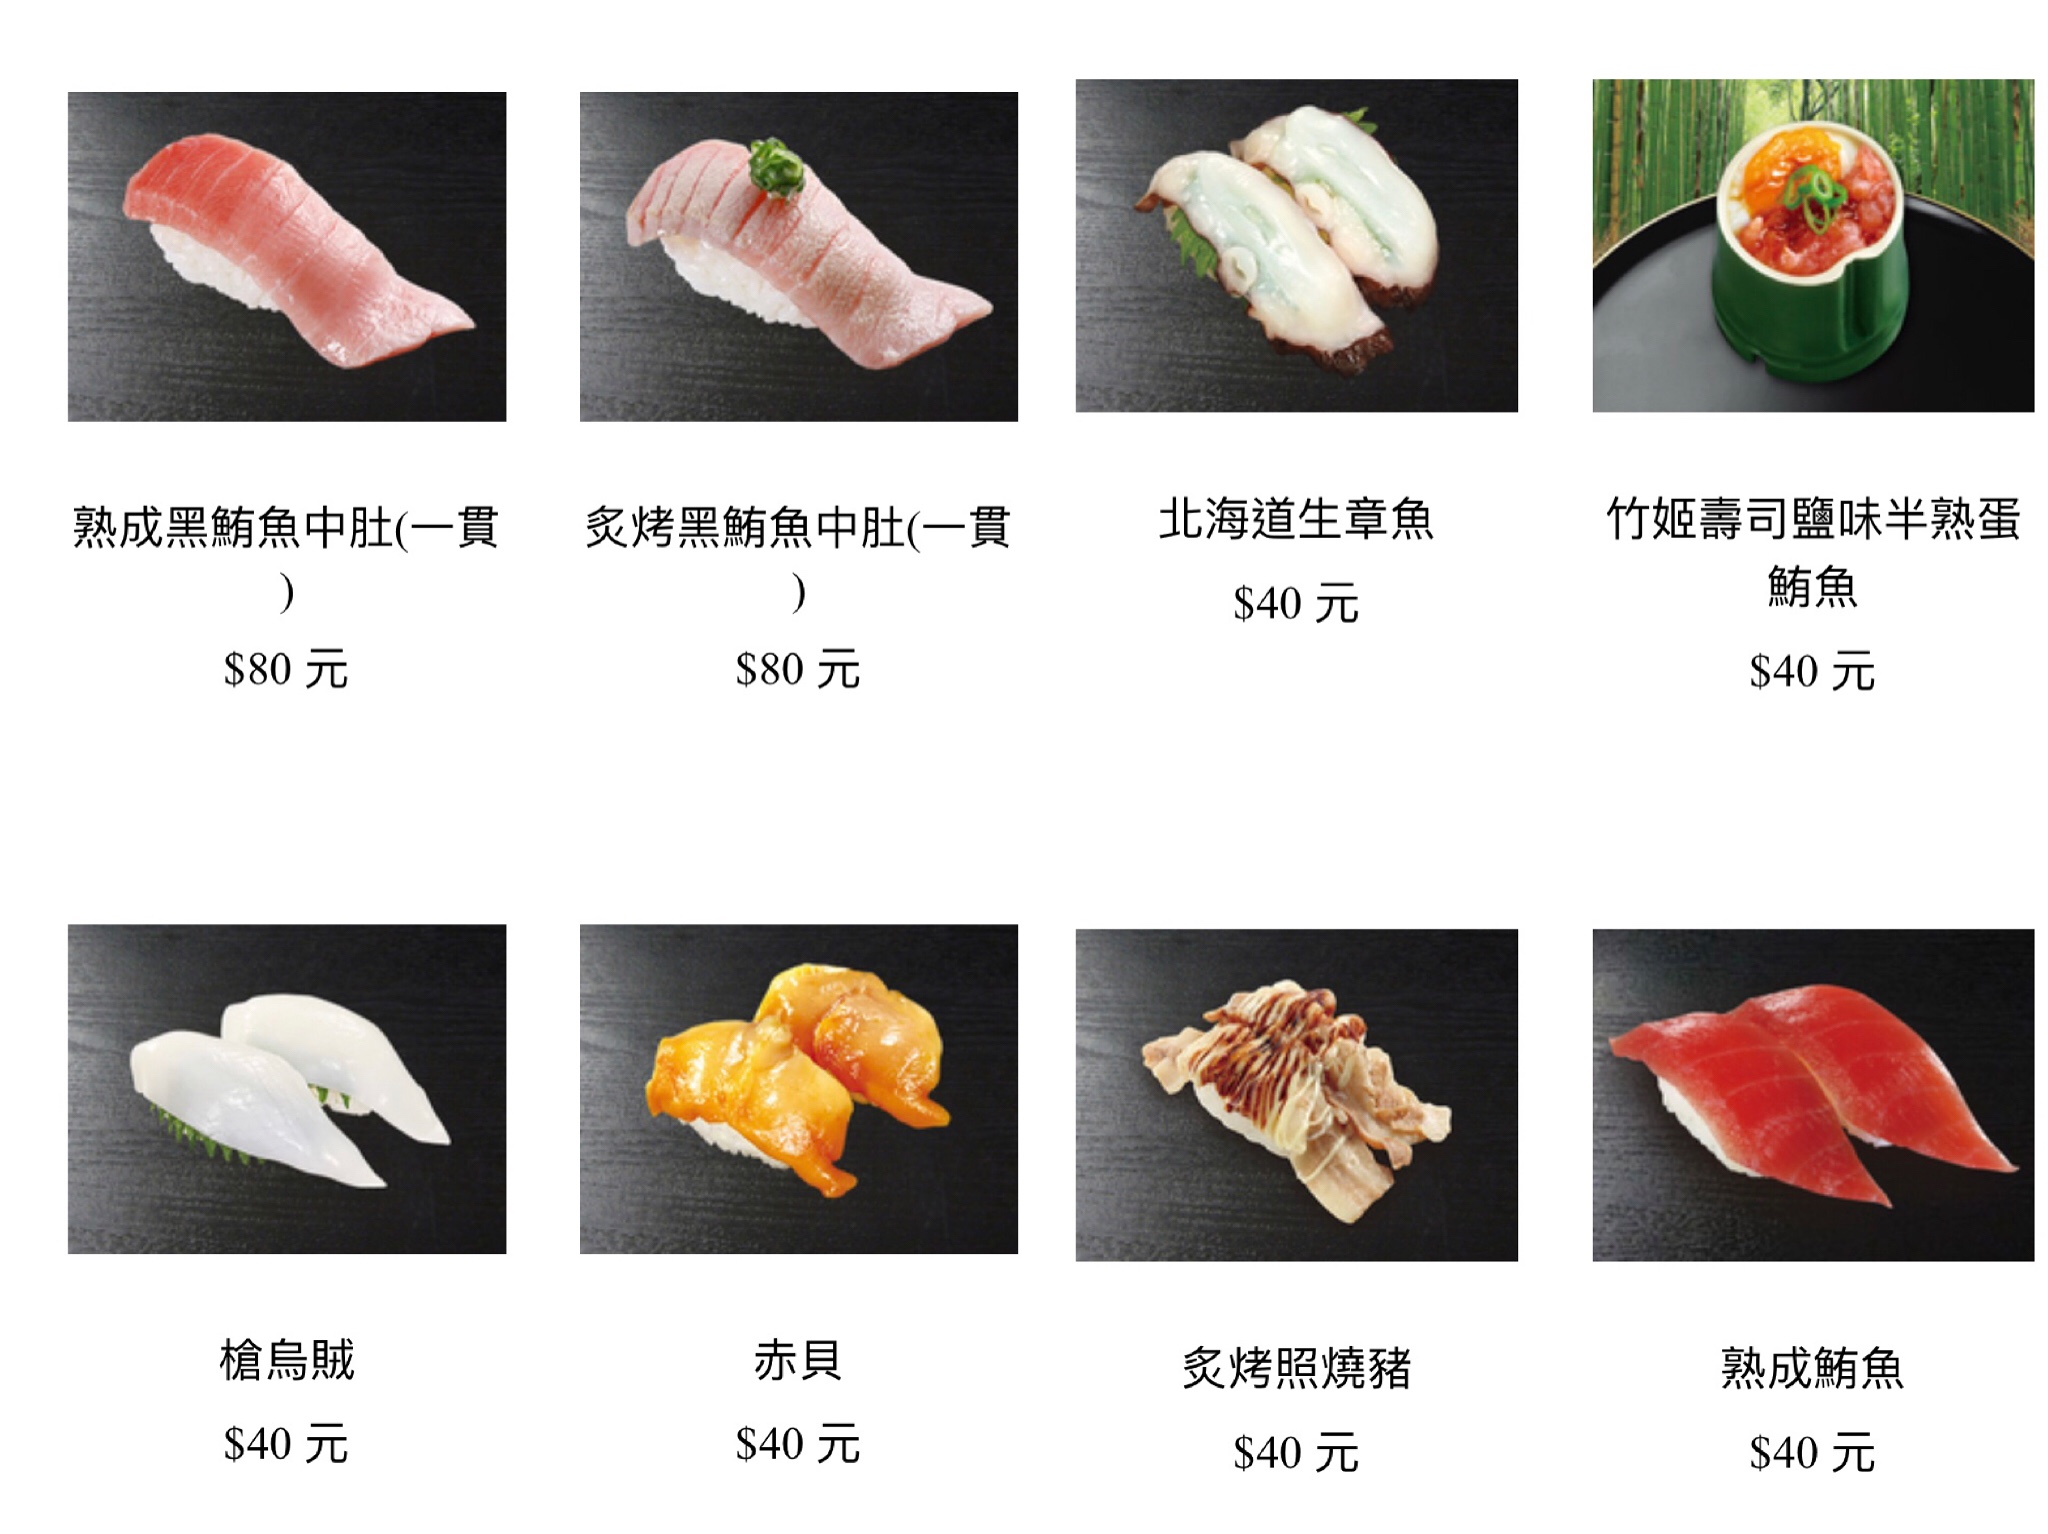 菜單 藏壽司菜單 21年新菜單 價目表 持續更新中 痴吃的玩